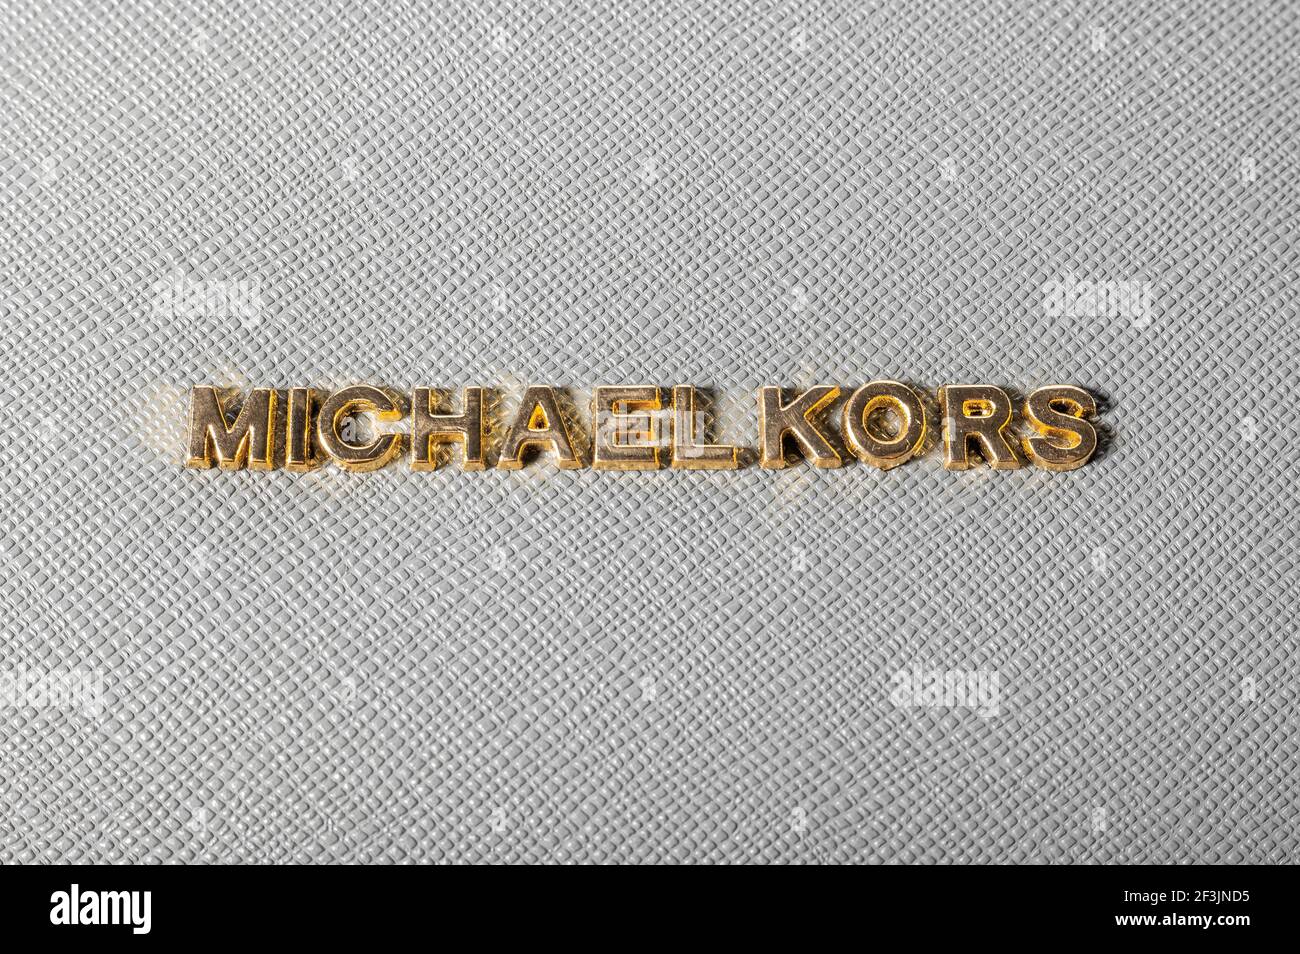 MOSKAU, RUSSLAND - 17. MÄRZ 2021: Nahaufnahme Logo Michael Kors auf Leder  graue Handtasche. Michael Kors Marke von Kleidung und Accessoires  Stockfotografie - Alamy